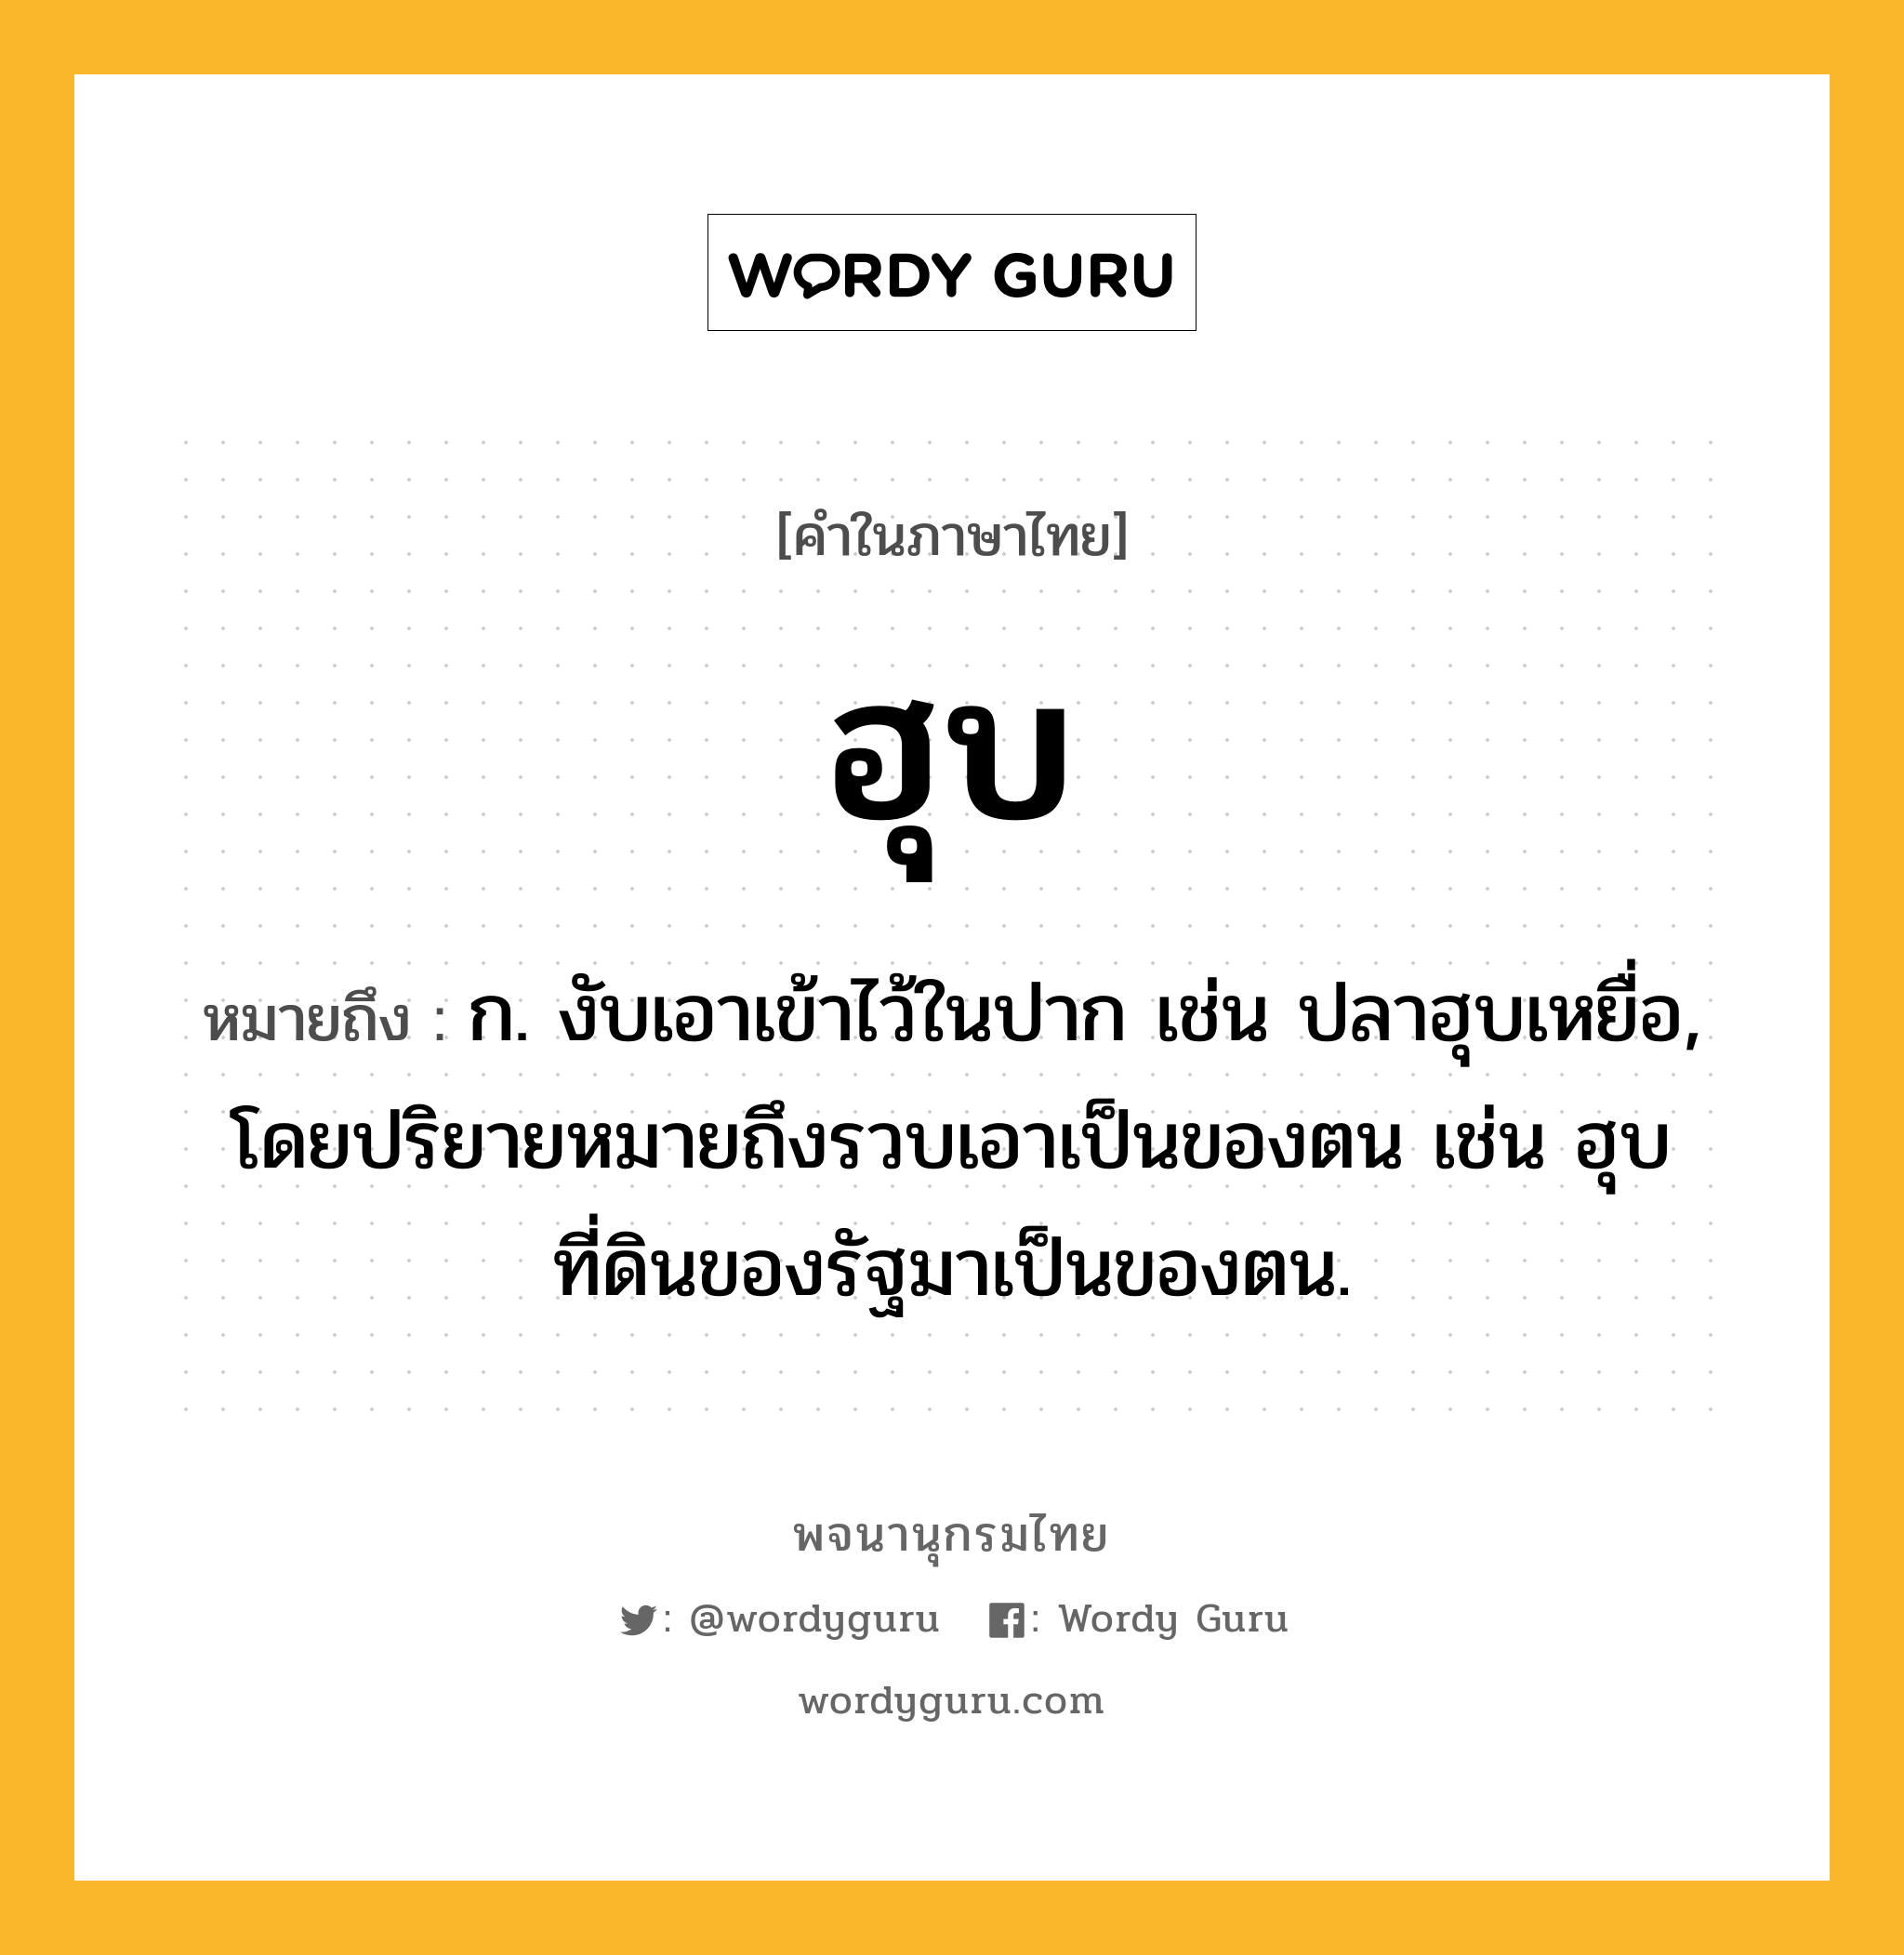 ฮุบ ความหมาย หมายถึงอะไร?, คำในภาษาไทย ฮุบ หมายถึง ก. งับเอาเข้าไว้ในปาก เช่น ปลาฮุบเหยื่อ, โดยปริยายหมายถึงรวบเอาเป็นของตน เช่น ฮุบที่ดินของรัฐมาเป็นของตน.